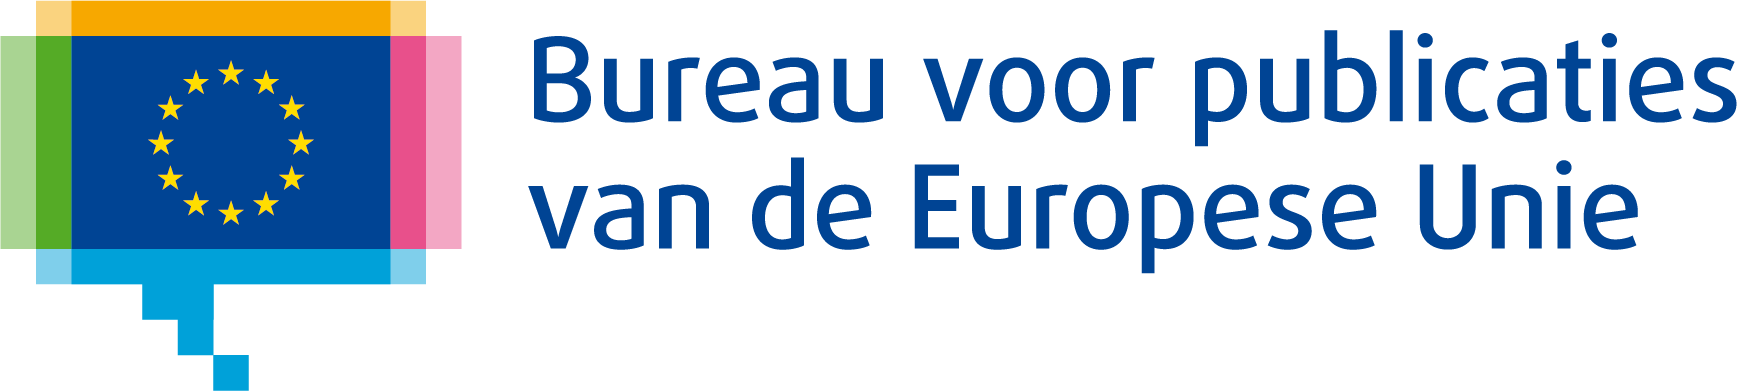 Bureau voor publicaties van de Europese Unie